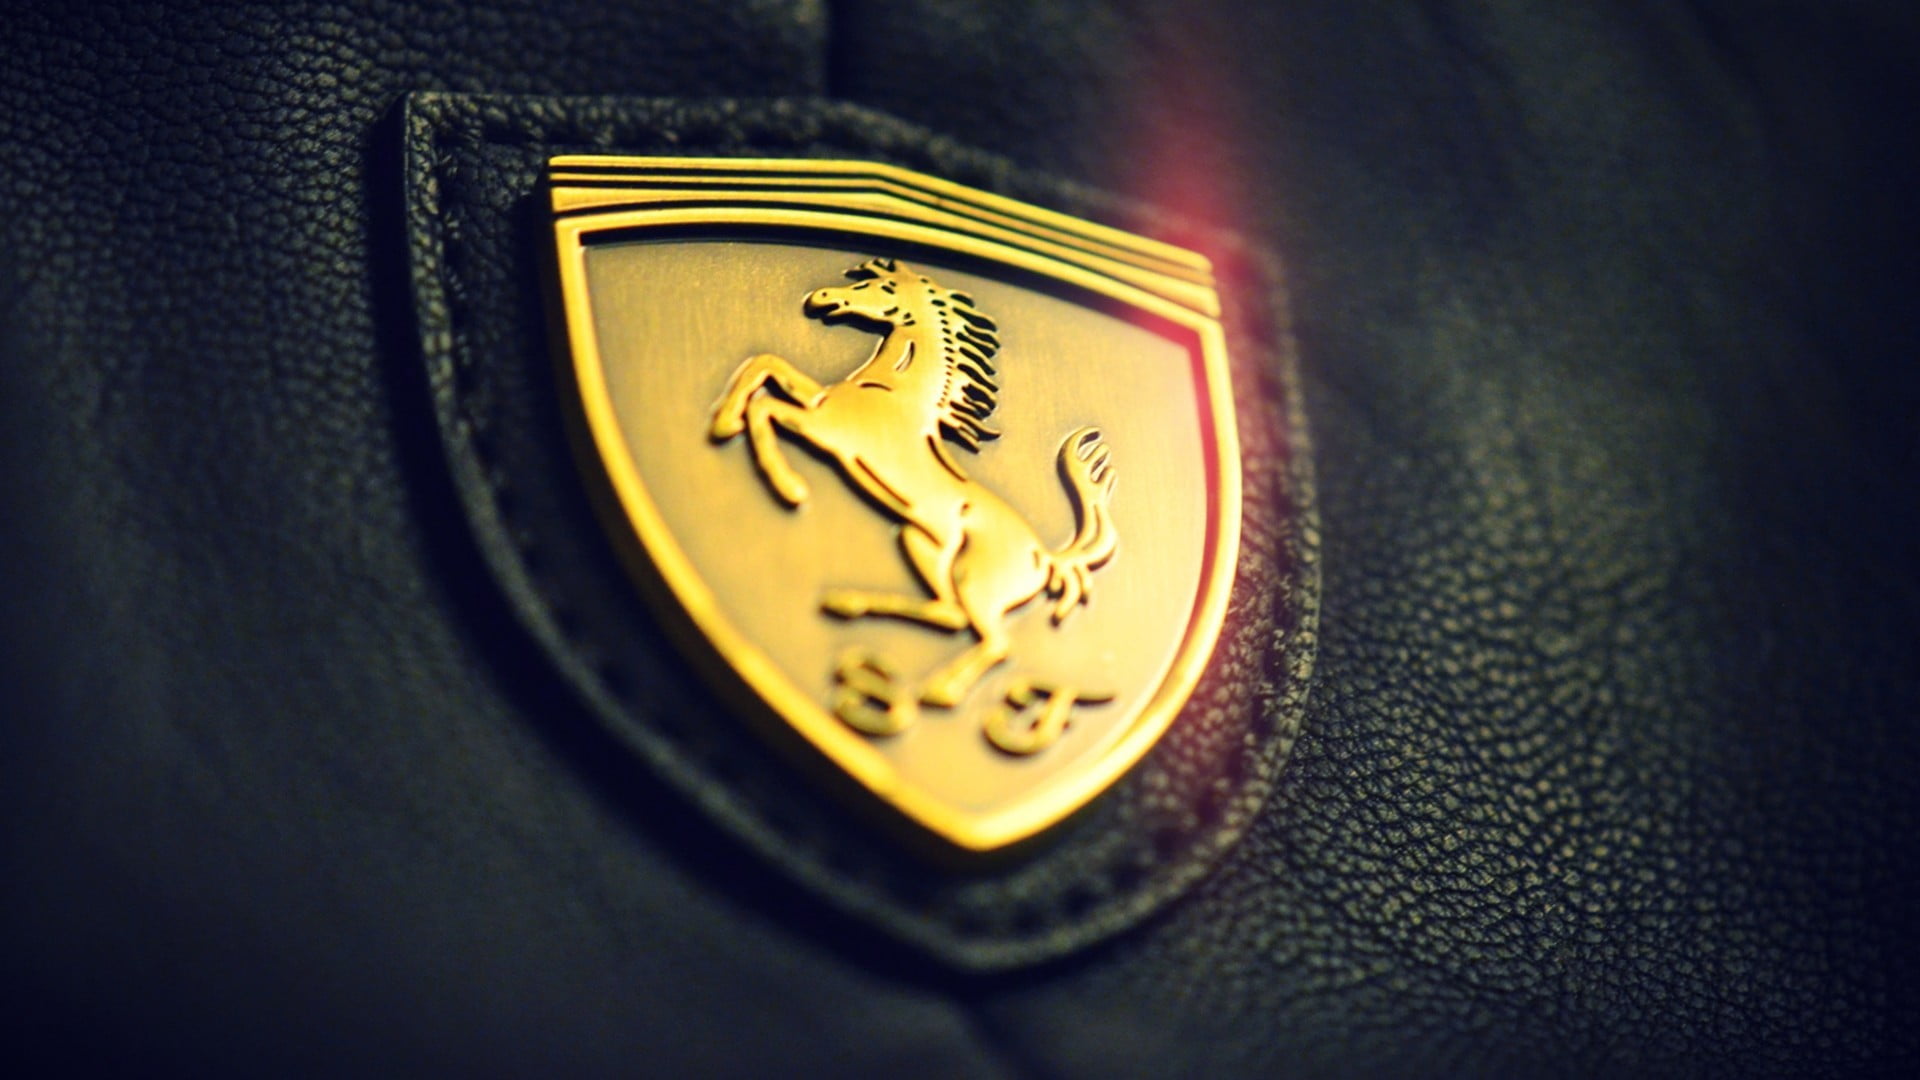 gold-colored Ferrari emblem, Ferrari, symbols, logo, gold